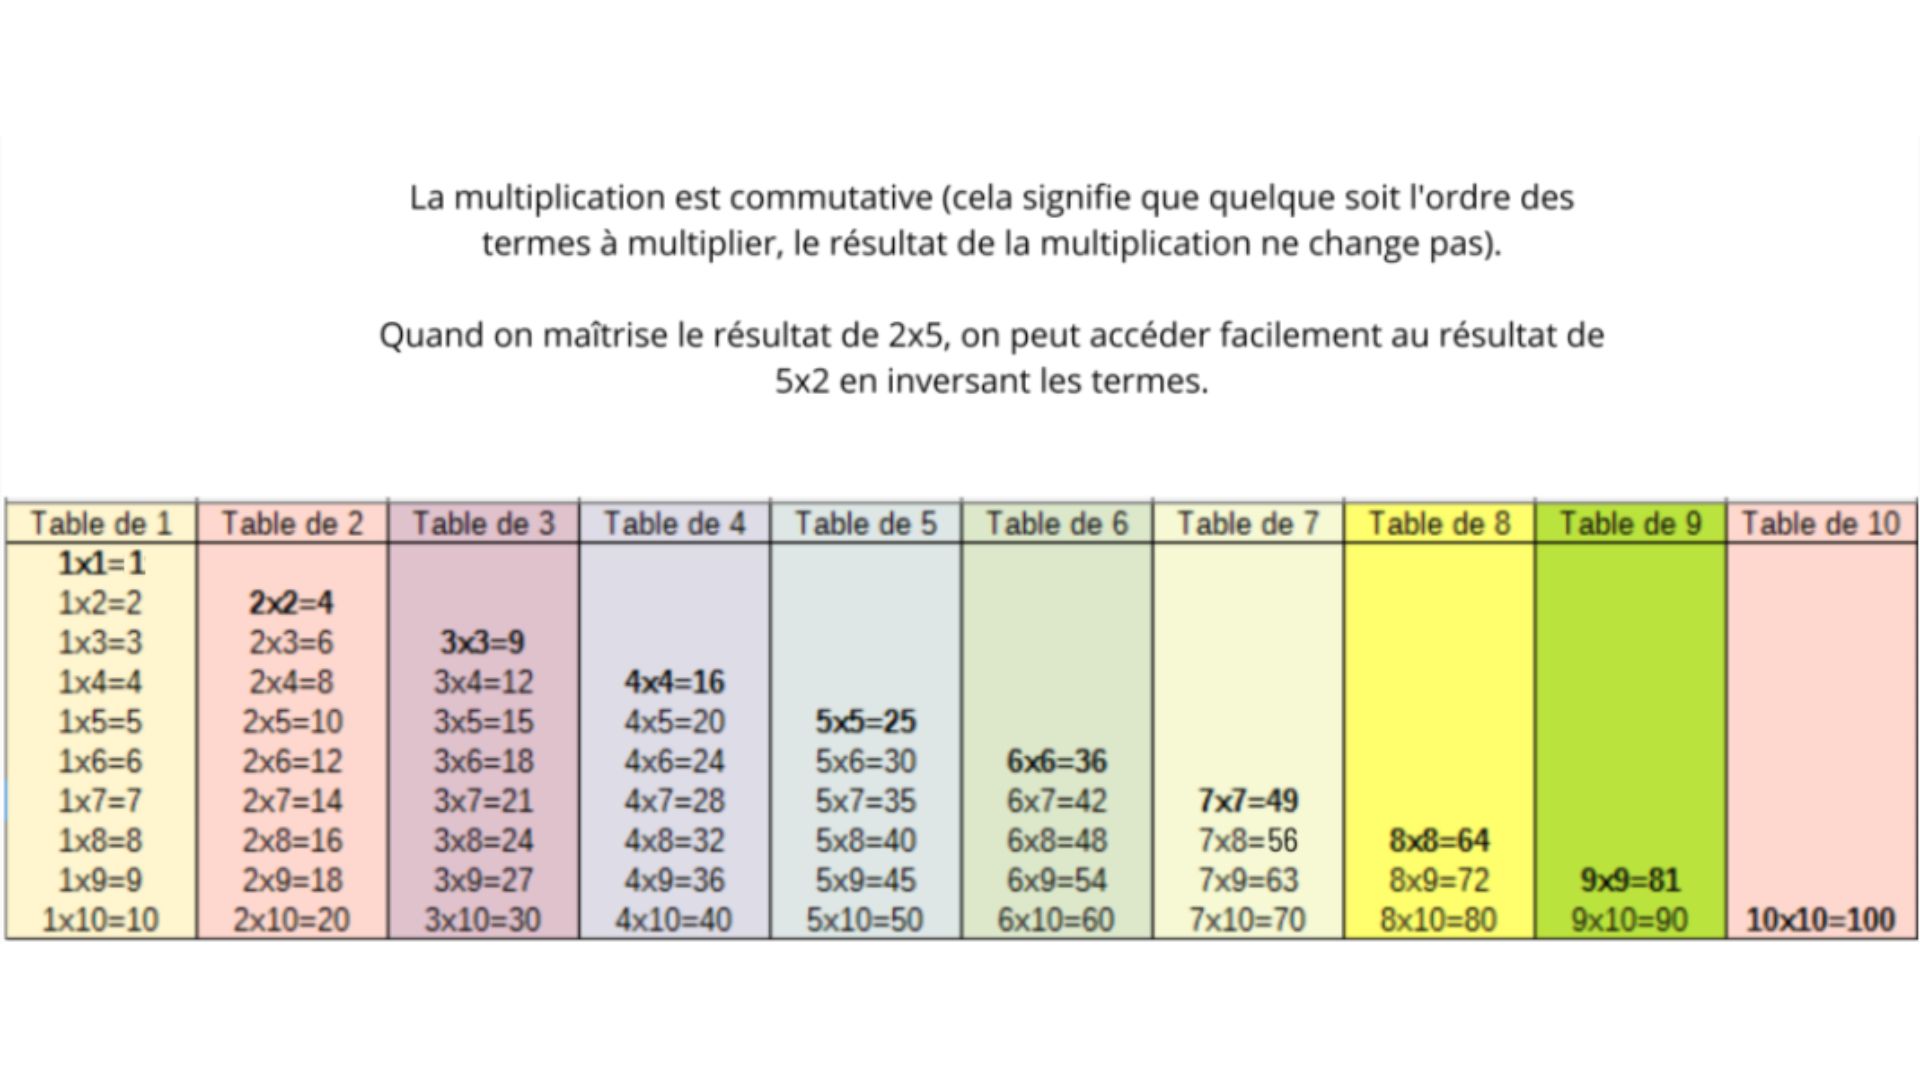 Astuces pour mémoriser les tables de multiplication - Apprendre, réviser,  mémoriser